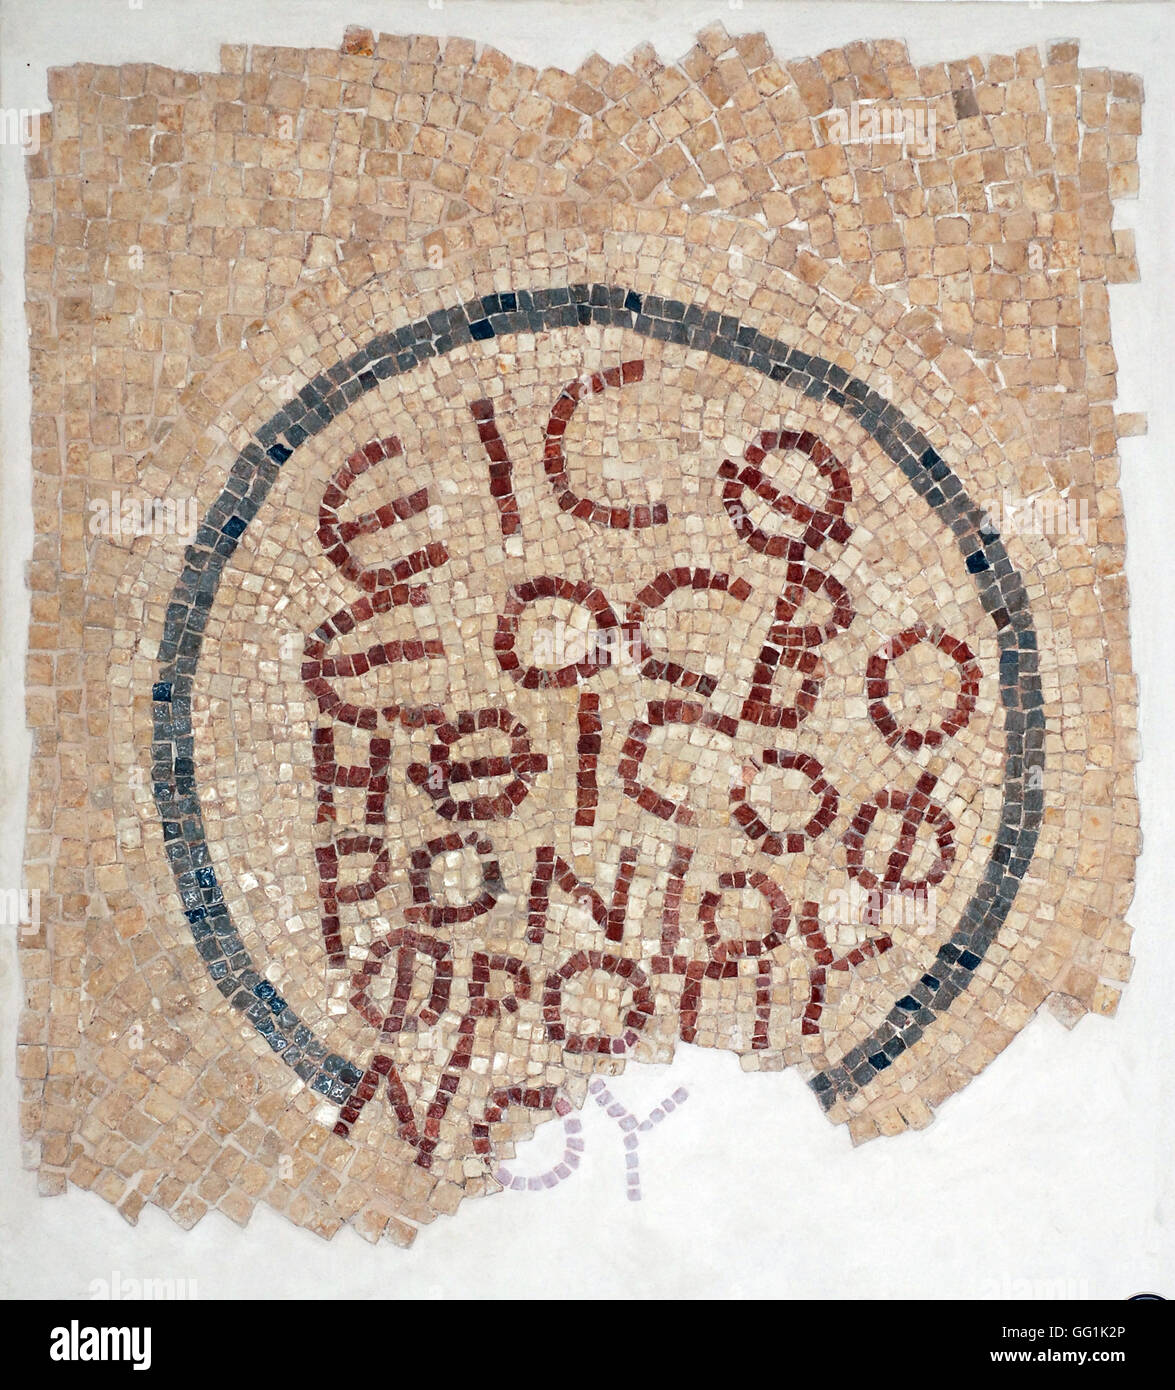 5892. El-Khirbe sinagoga samaritana (Samaria) risalente al 4th. C. AD. Iscrizione greca dal pavimento a mosaico. Foto Stock